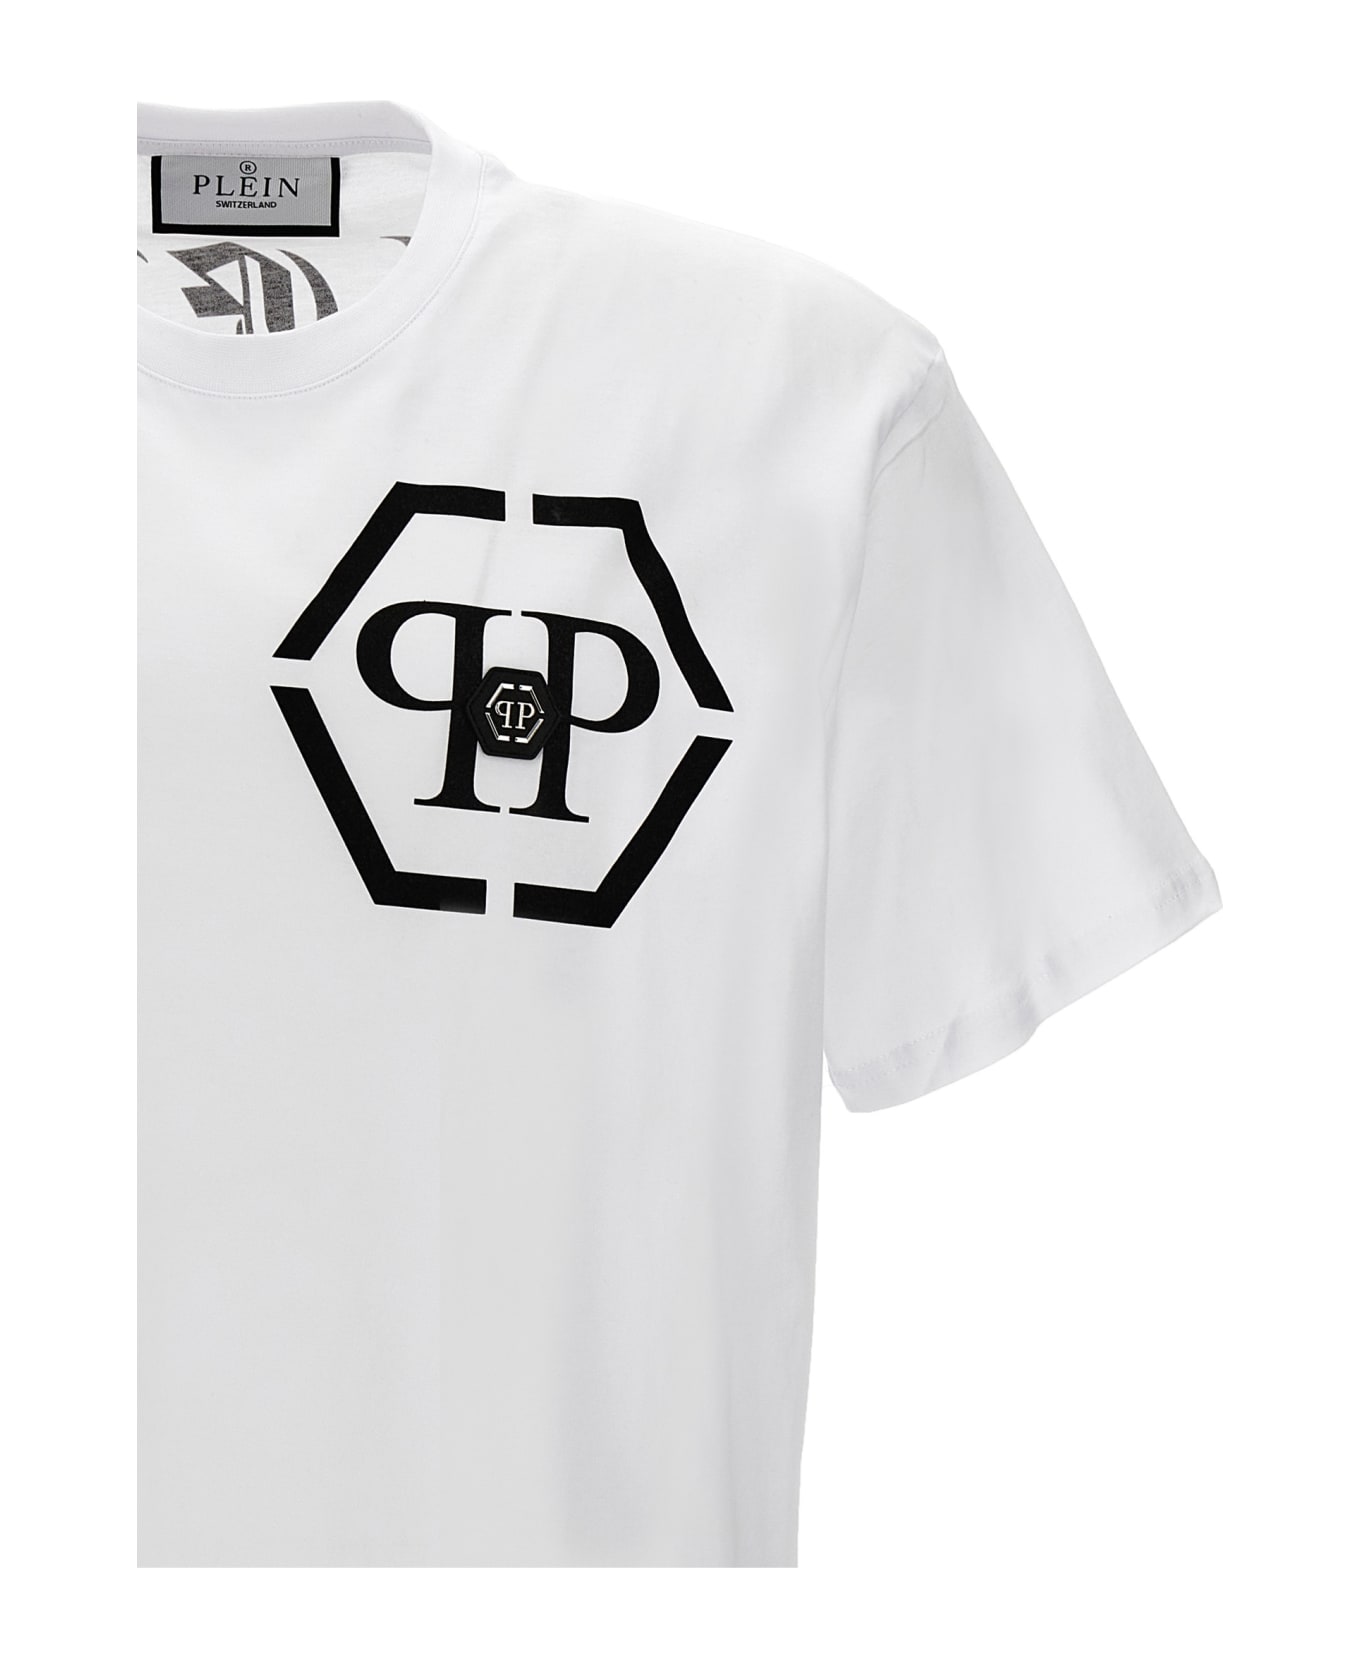 Philipp Plein Logo T-shirt - White/Black